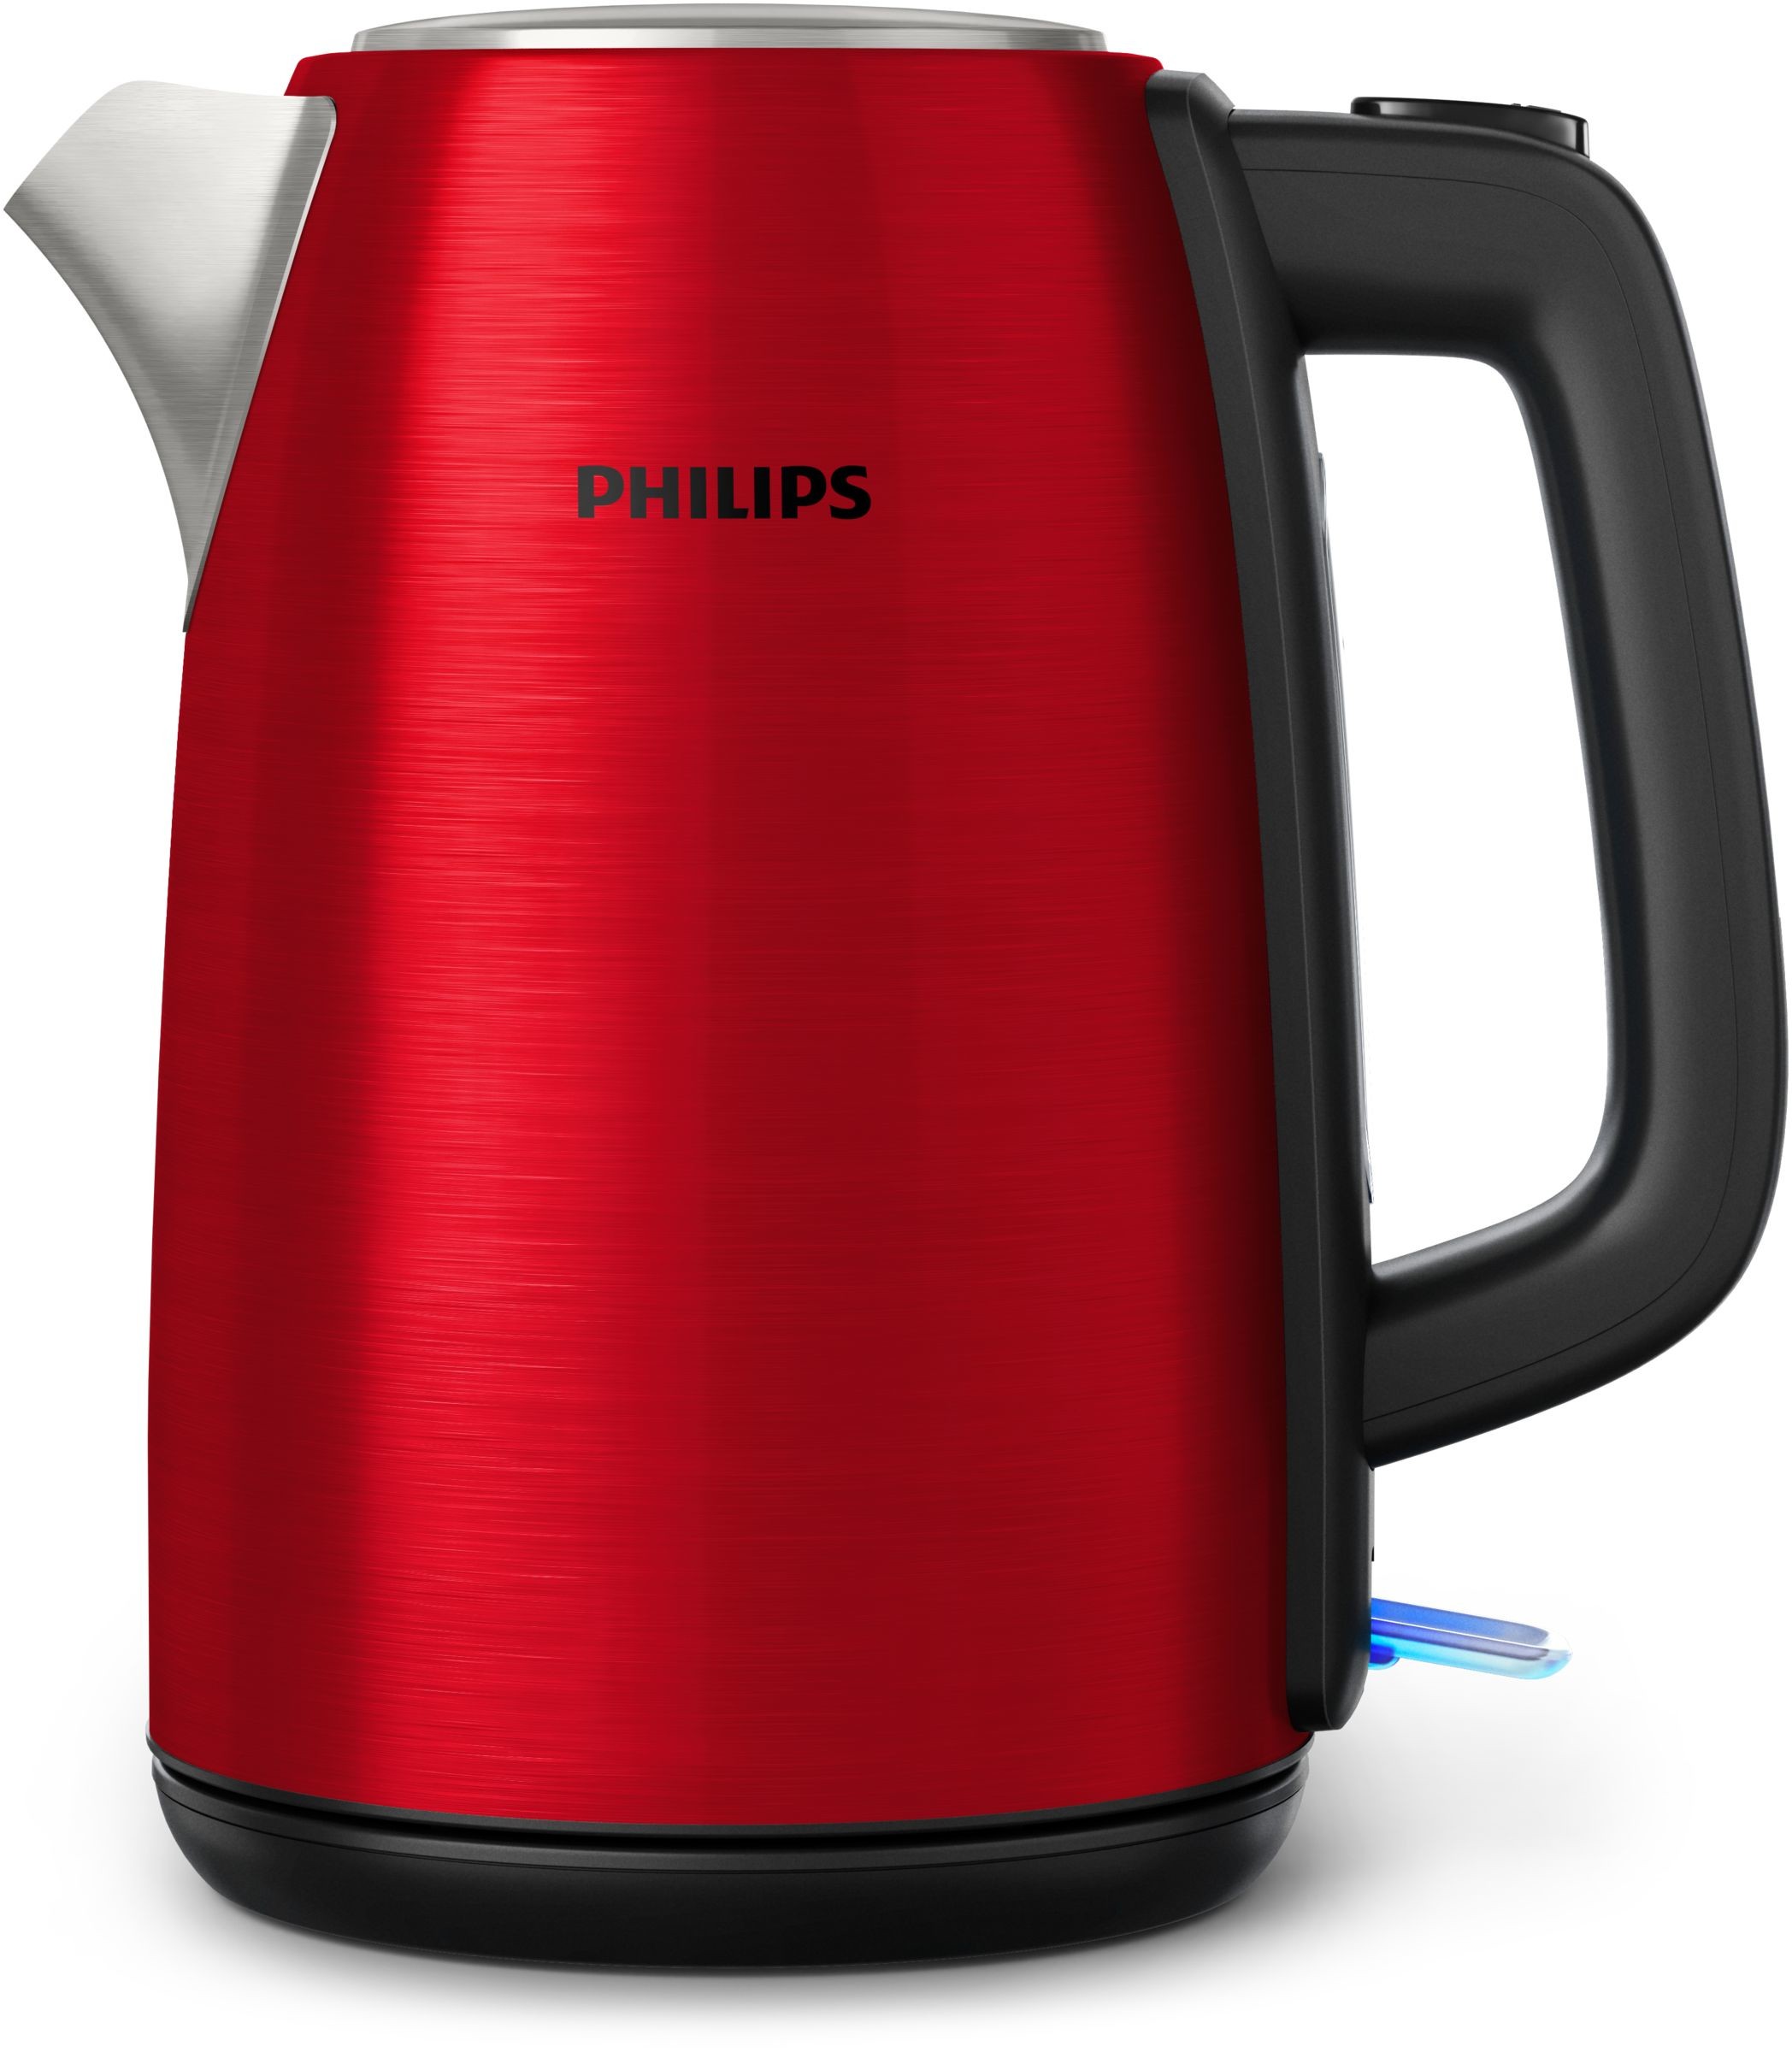 Bollitore elettrico Philips HD9352/60 1.7l red - - Esseshop - Il